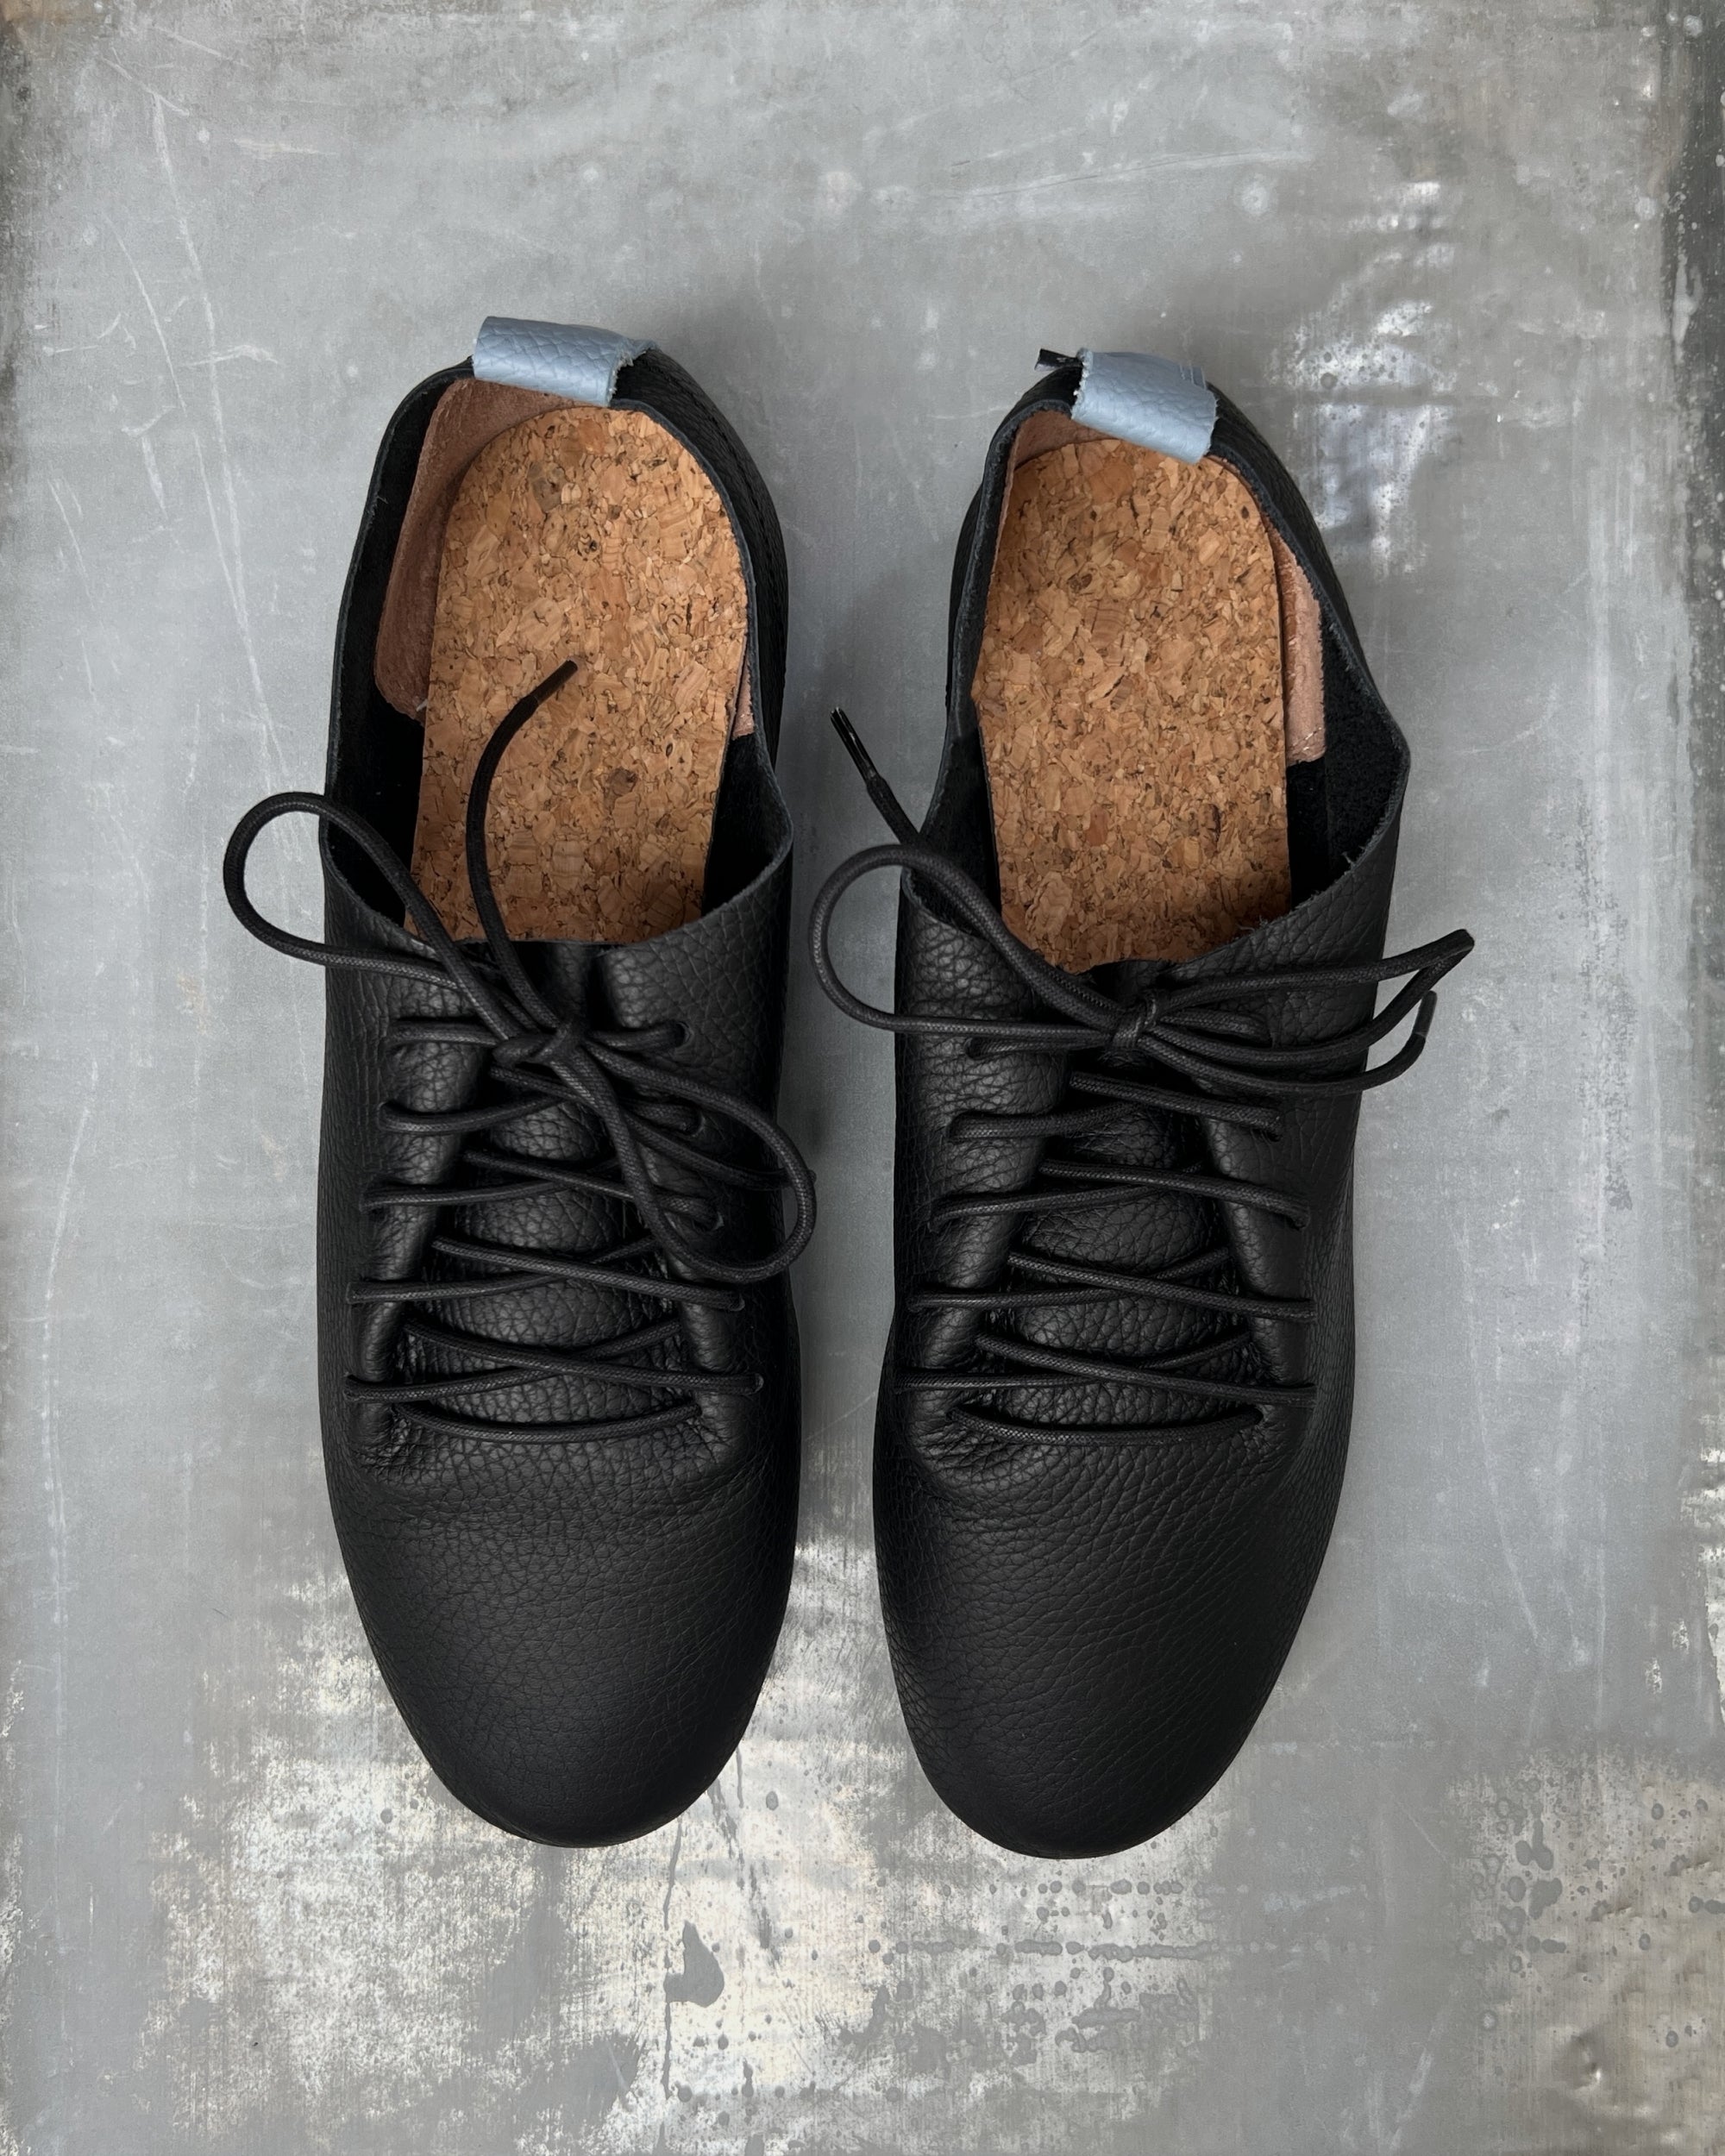 Swaanarlberg japanese leather shoes